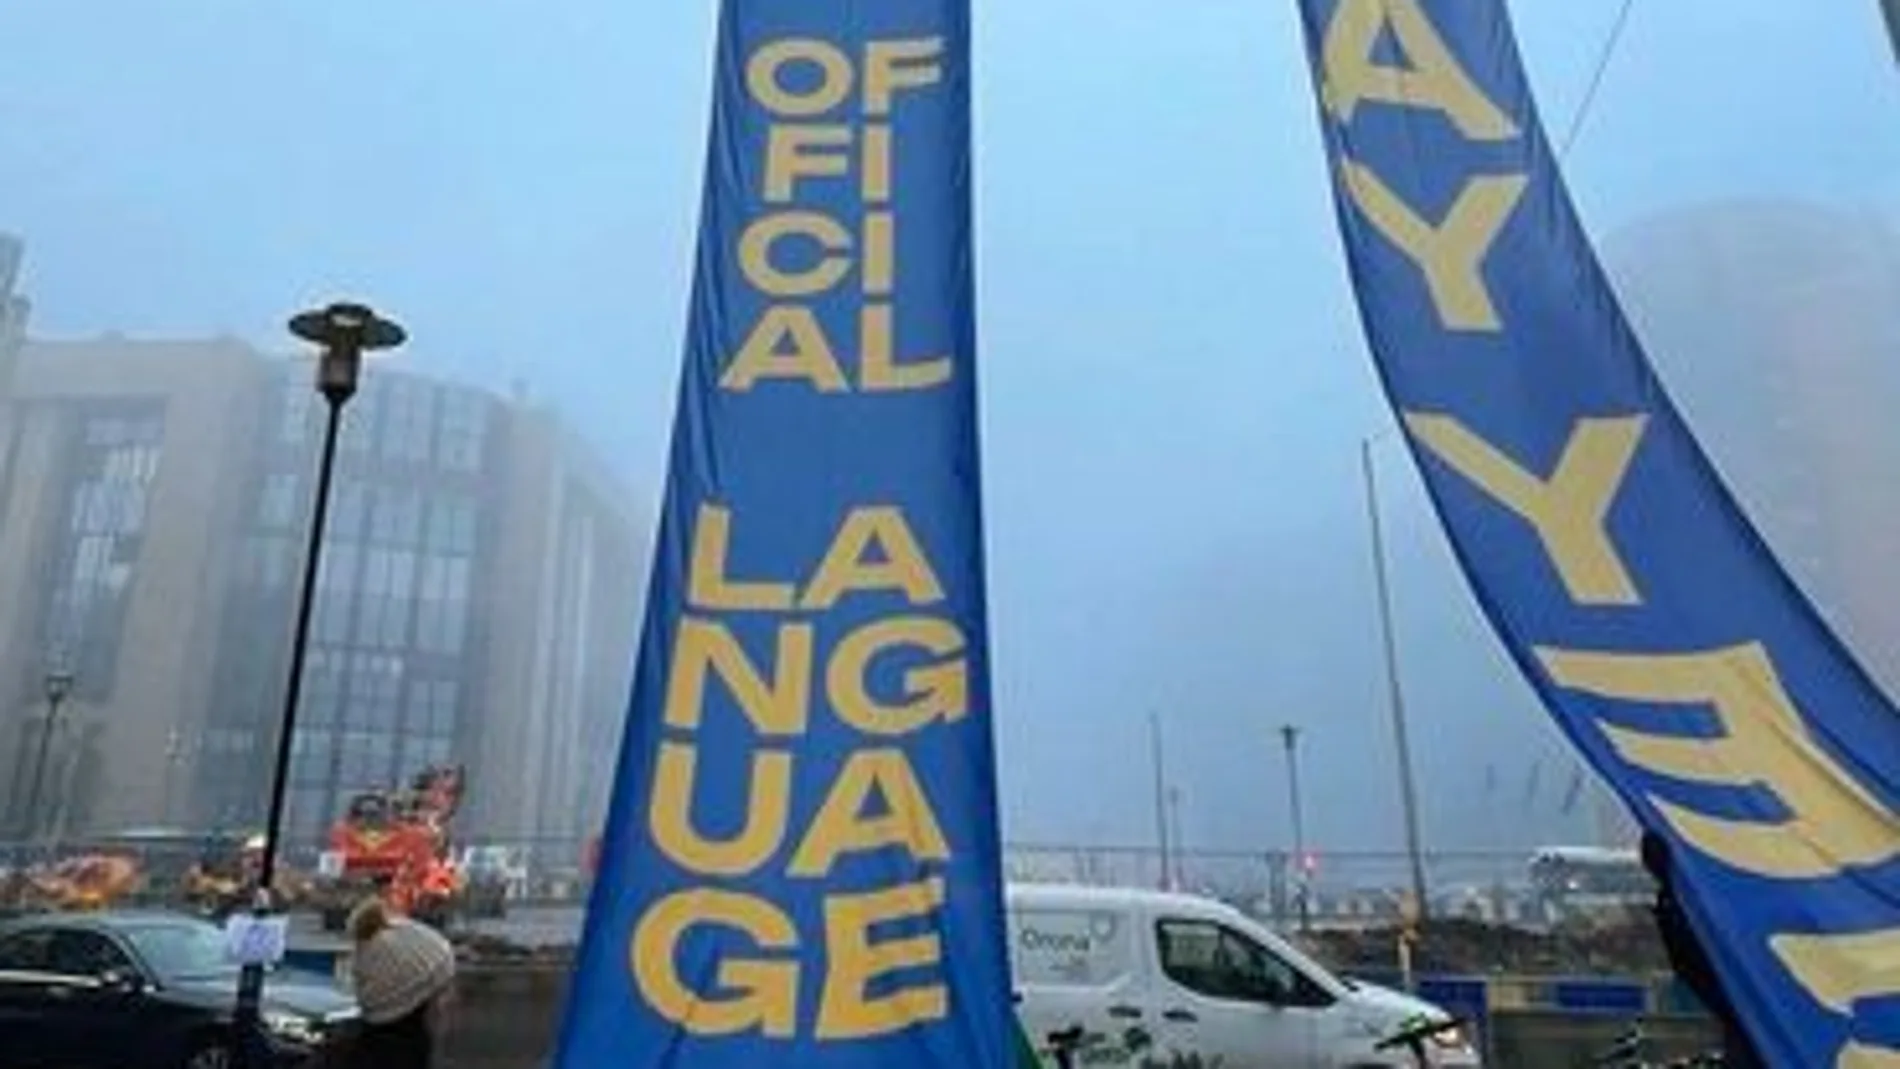 El independentismo radical presiona en Bruselas con pancartas 